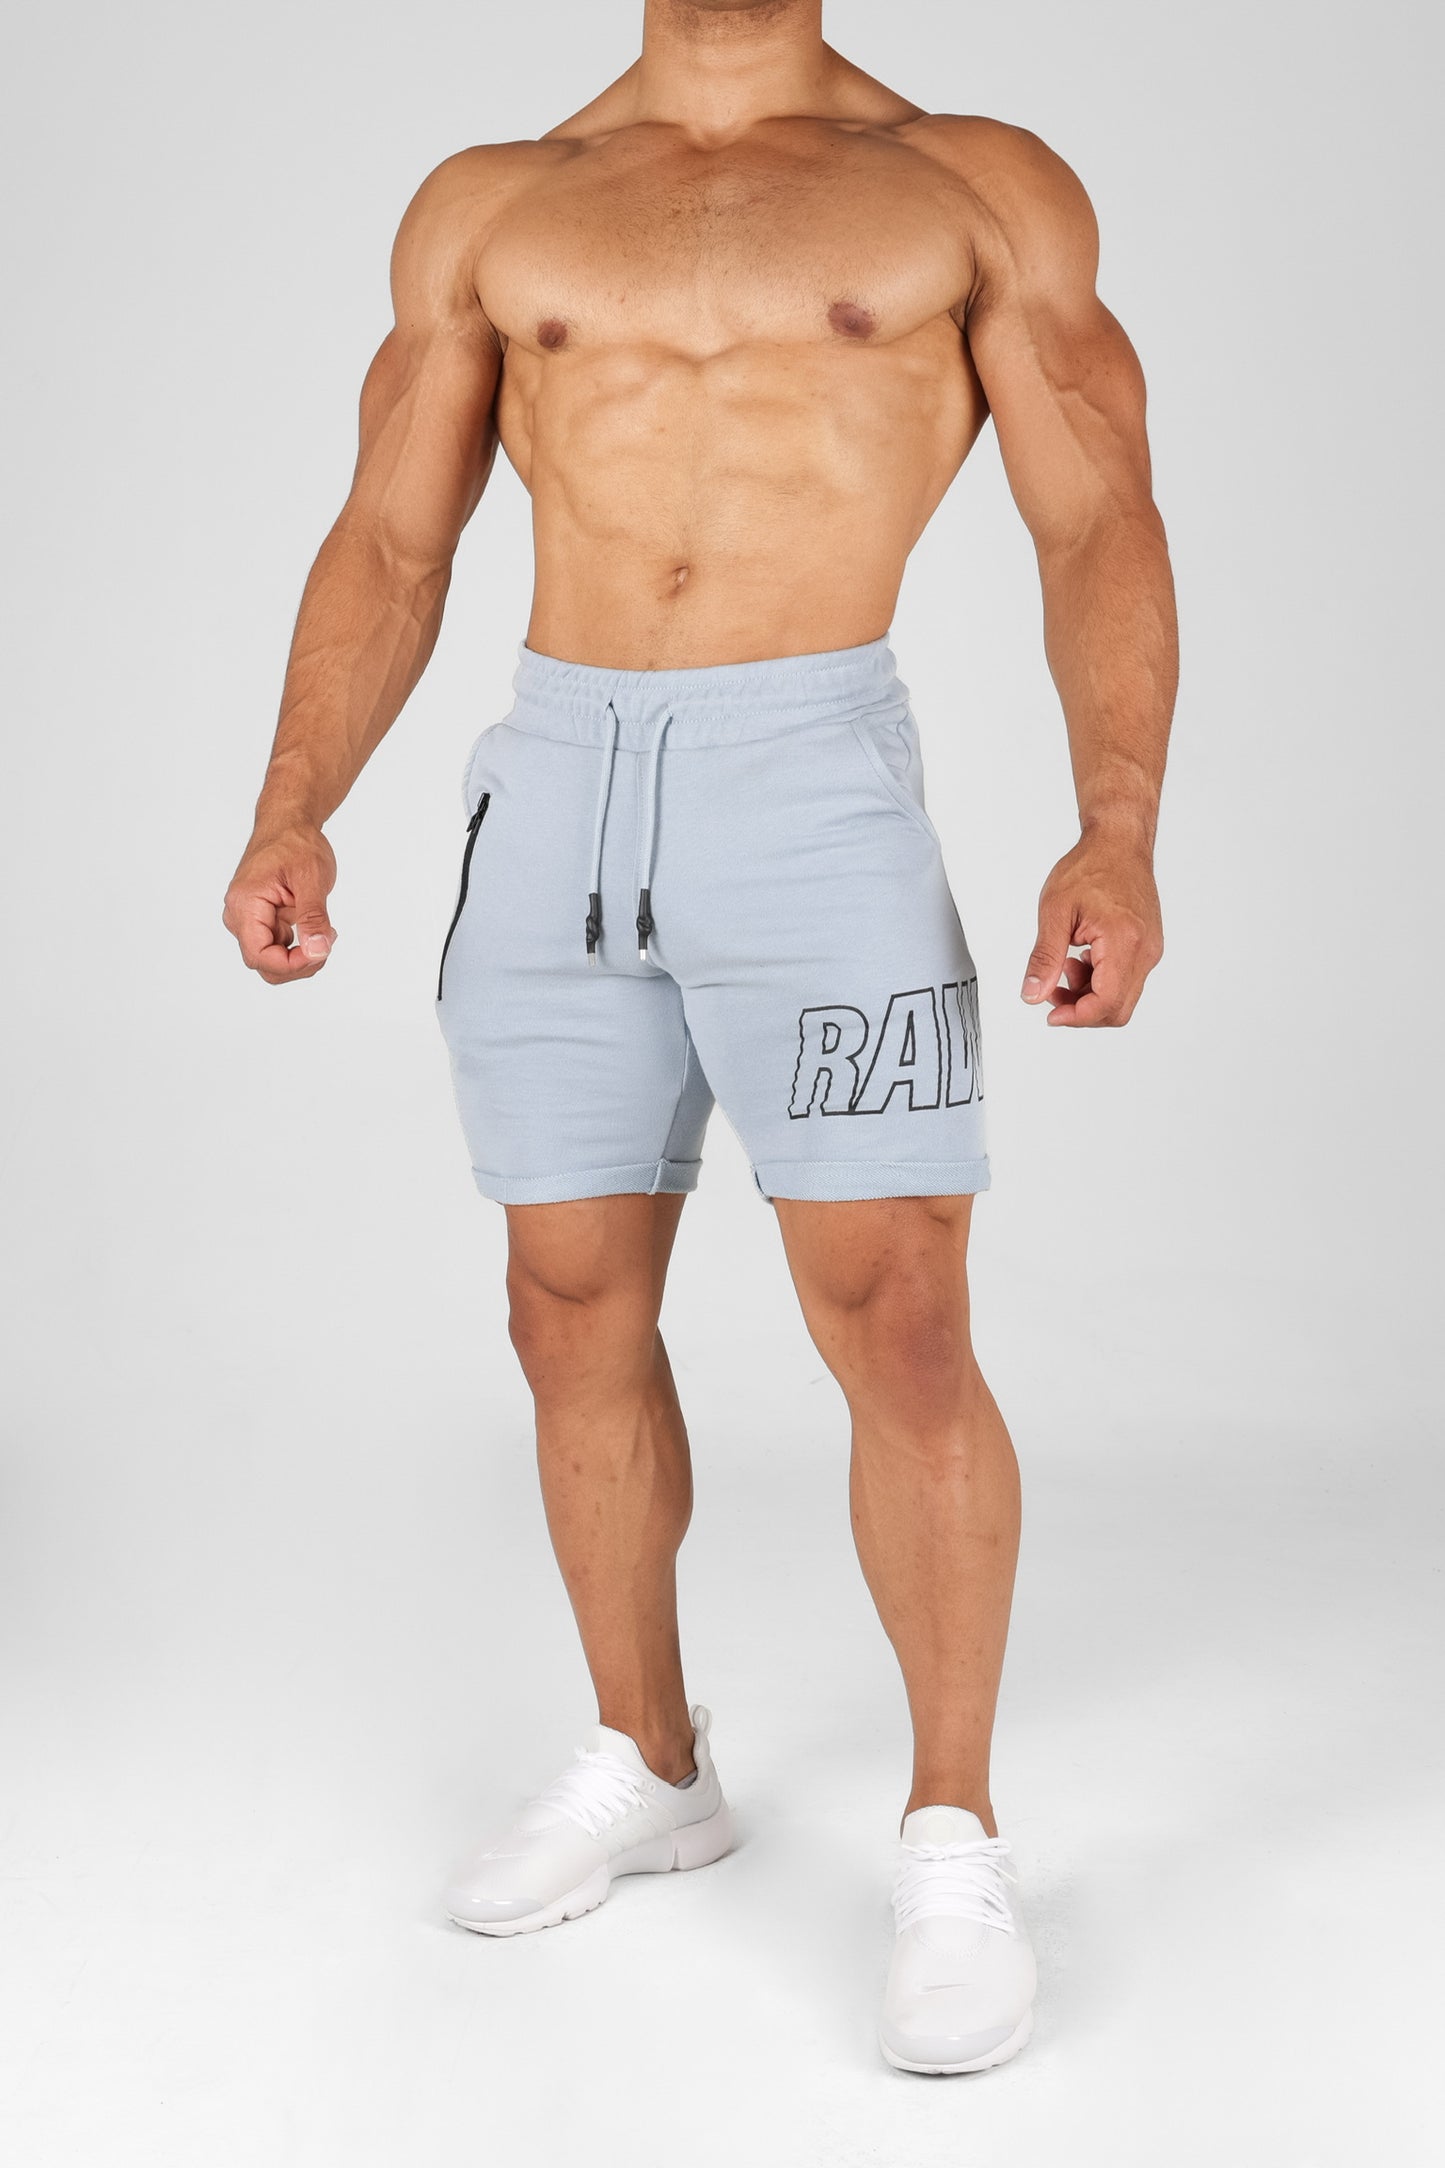 raw front shorts - RG119